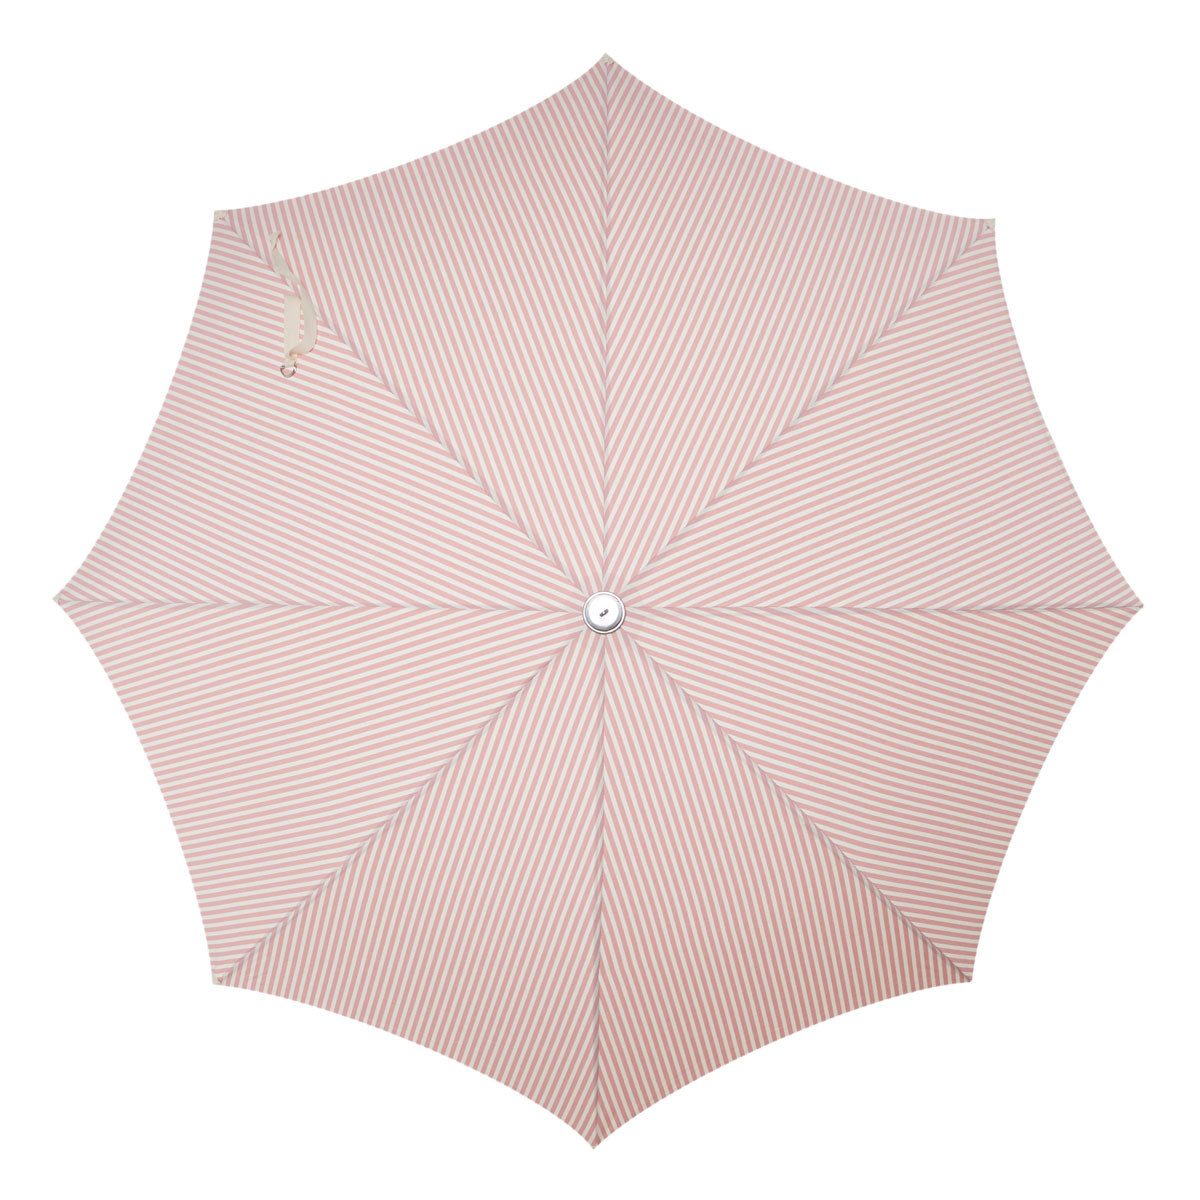 Premium Beach Umbrella | Business & Pleasure Co.